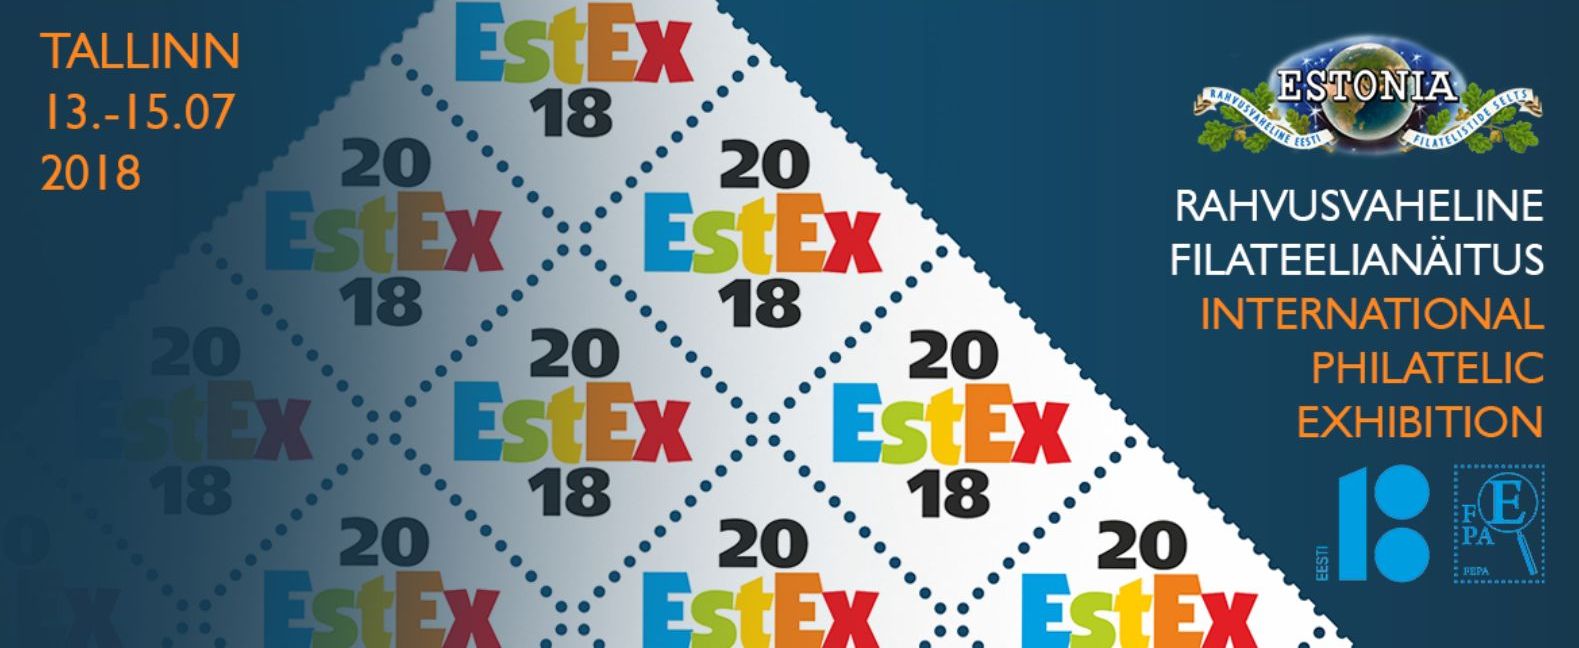 Poster EstEx